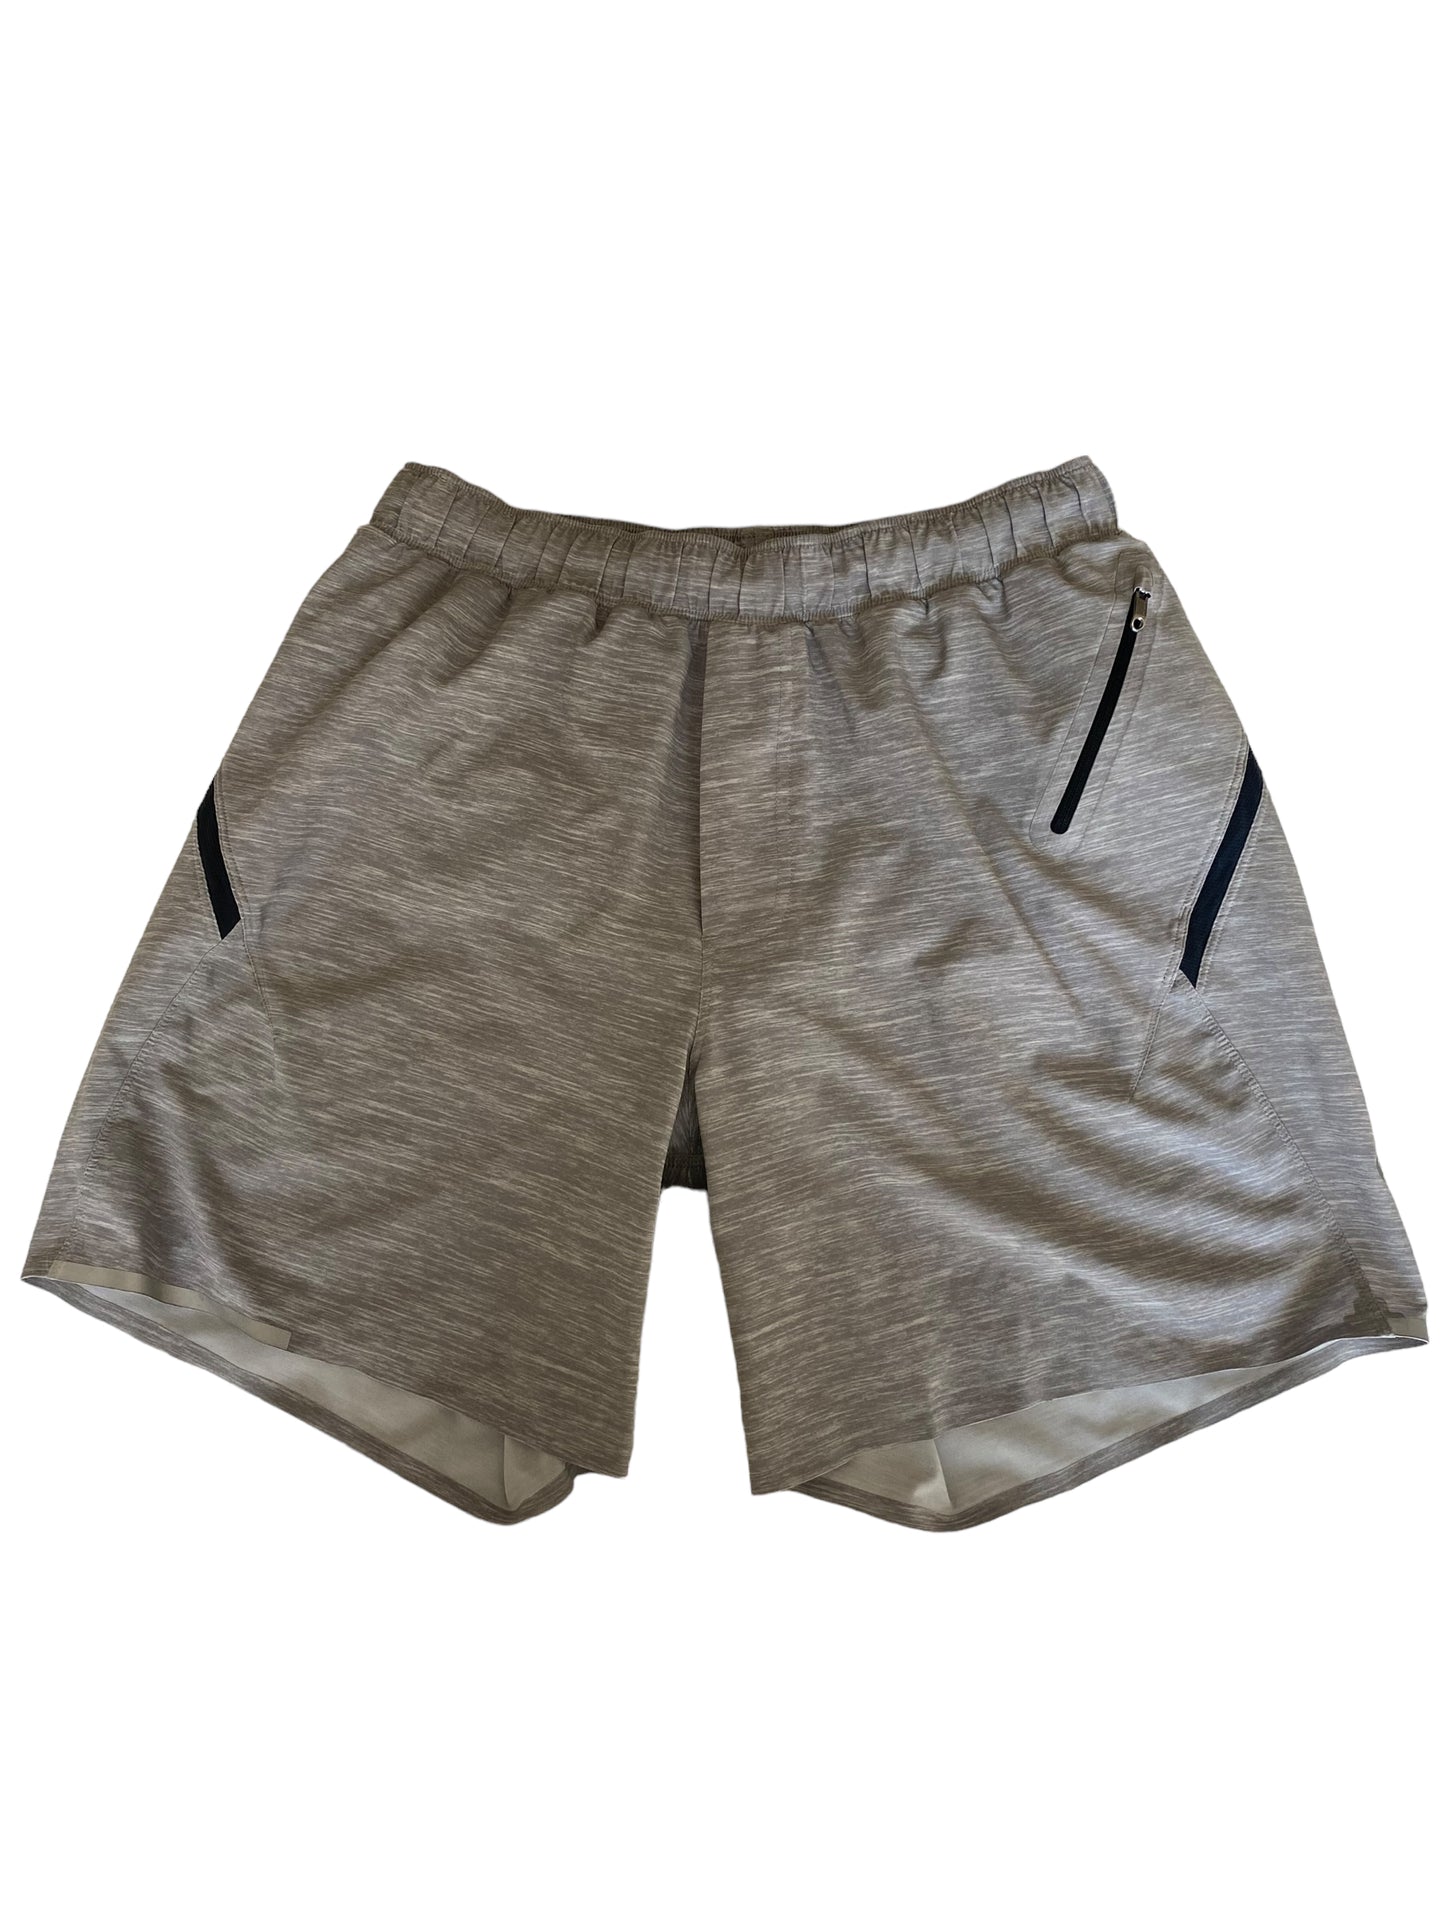 Lululemon Men’s Surge Shorts 7” Lined Size Medium